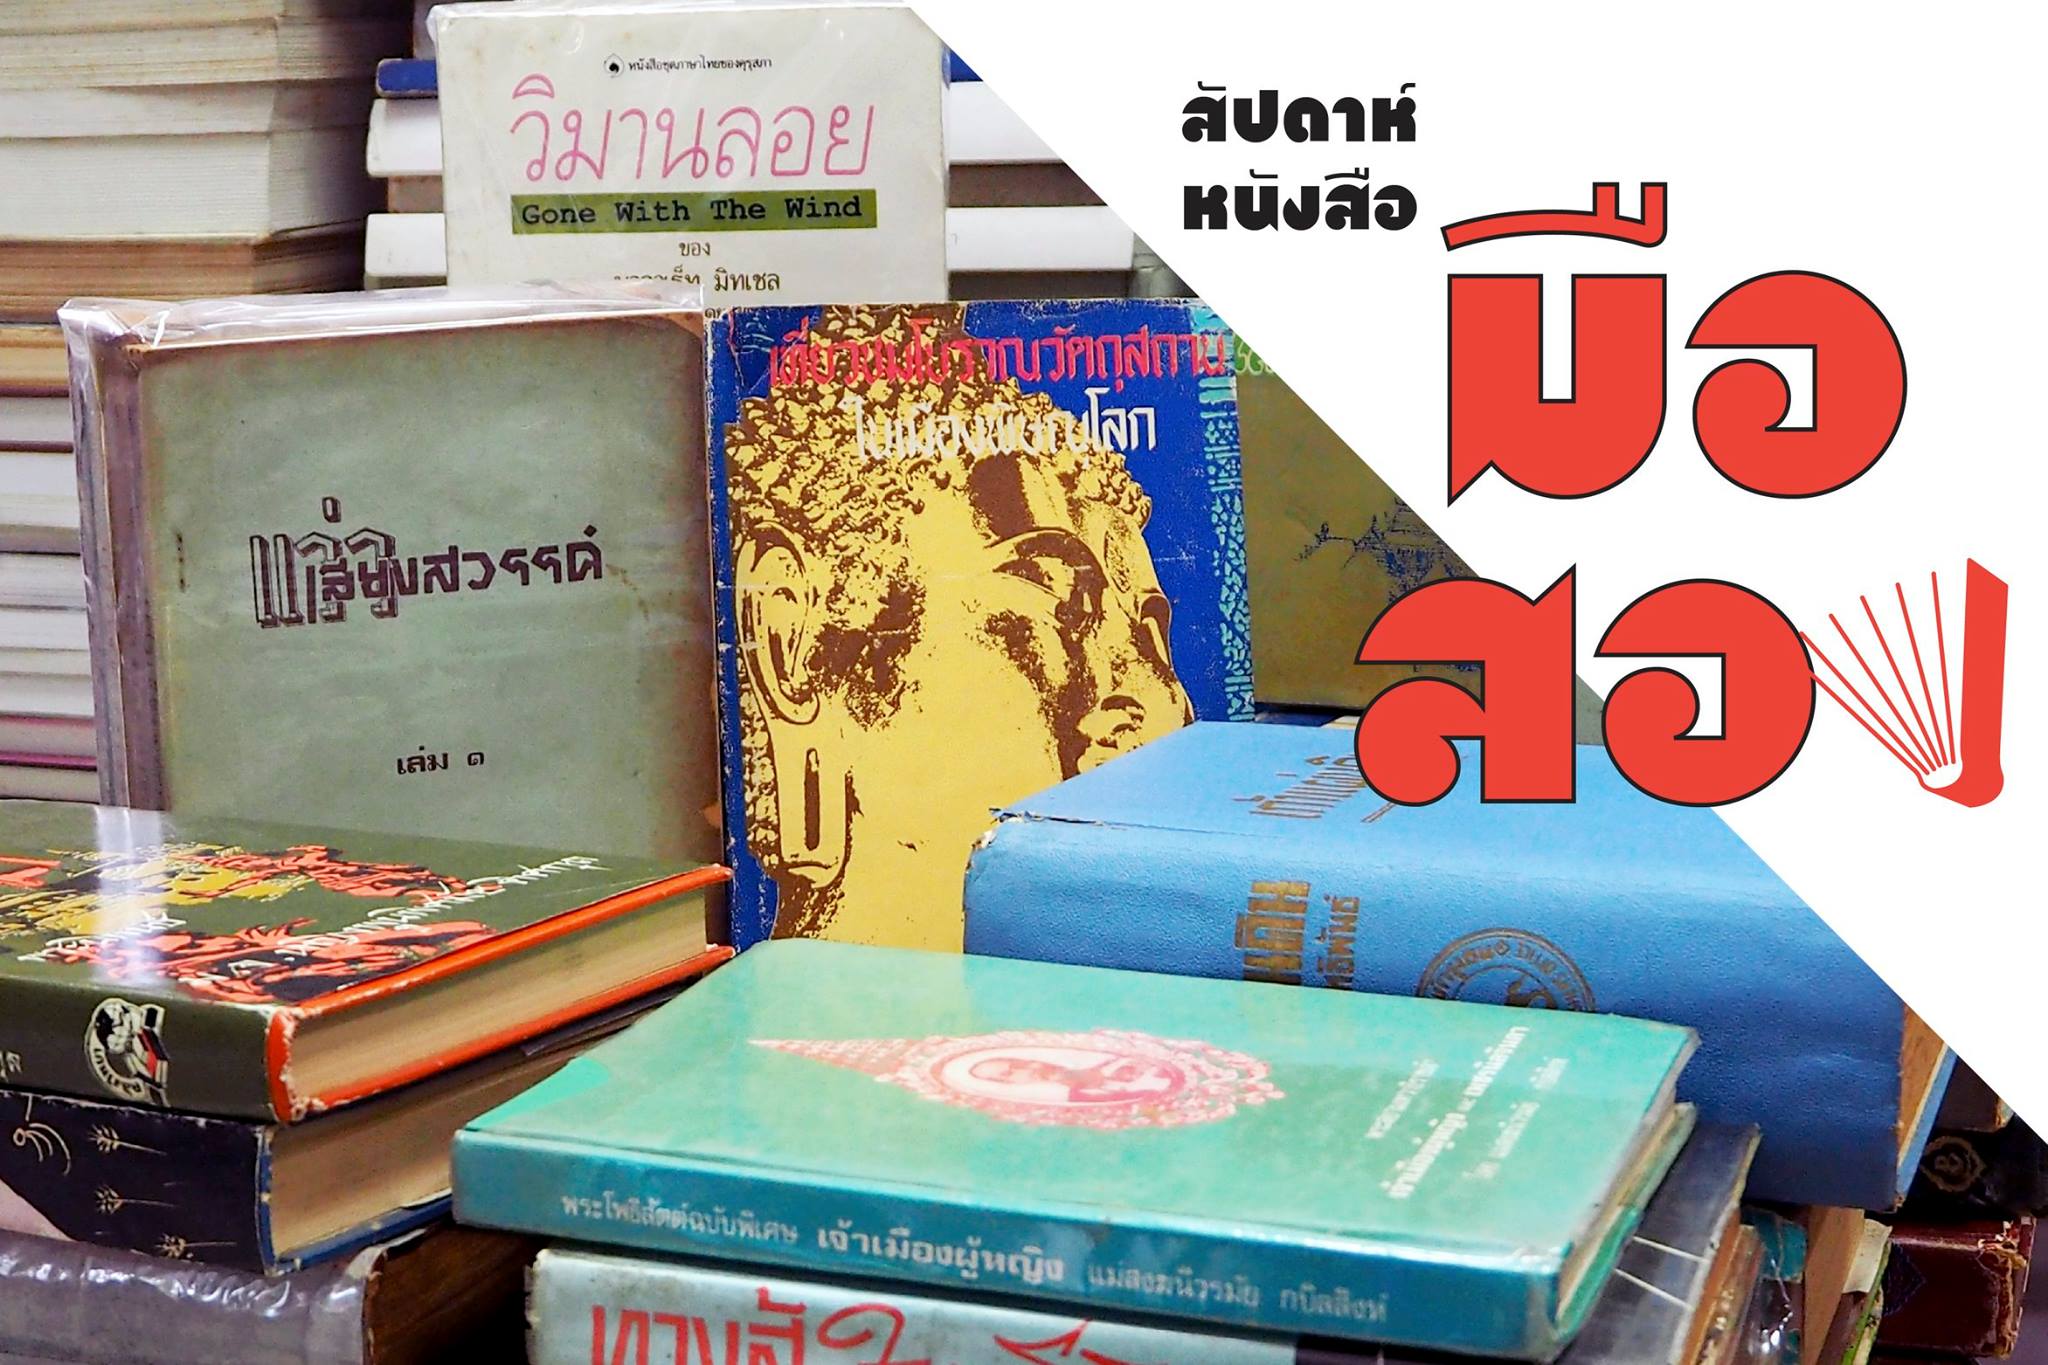 Rimkhobfa มุมอนุสาวรีย์ประชาธิปไตย ร้านหนังสือริมขอบฟ้า สัปดาห์หนังสือมือสอง หนังสือหายาก